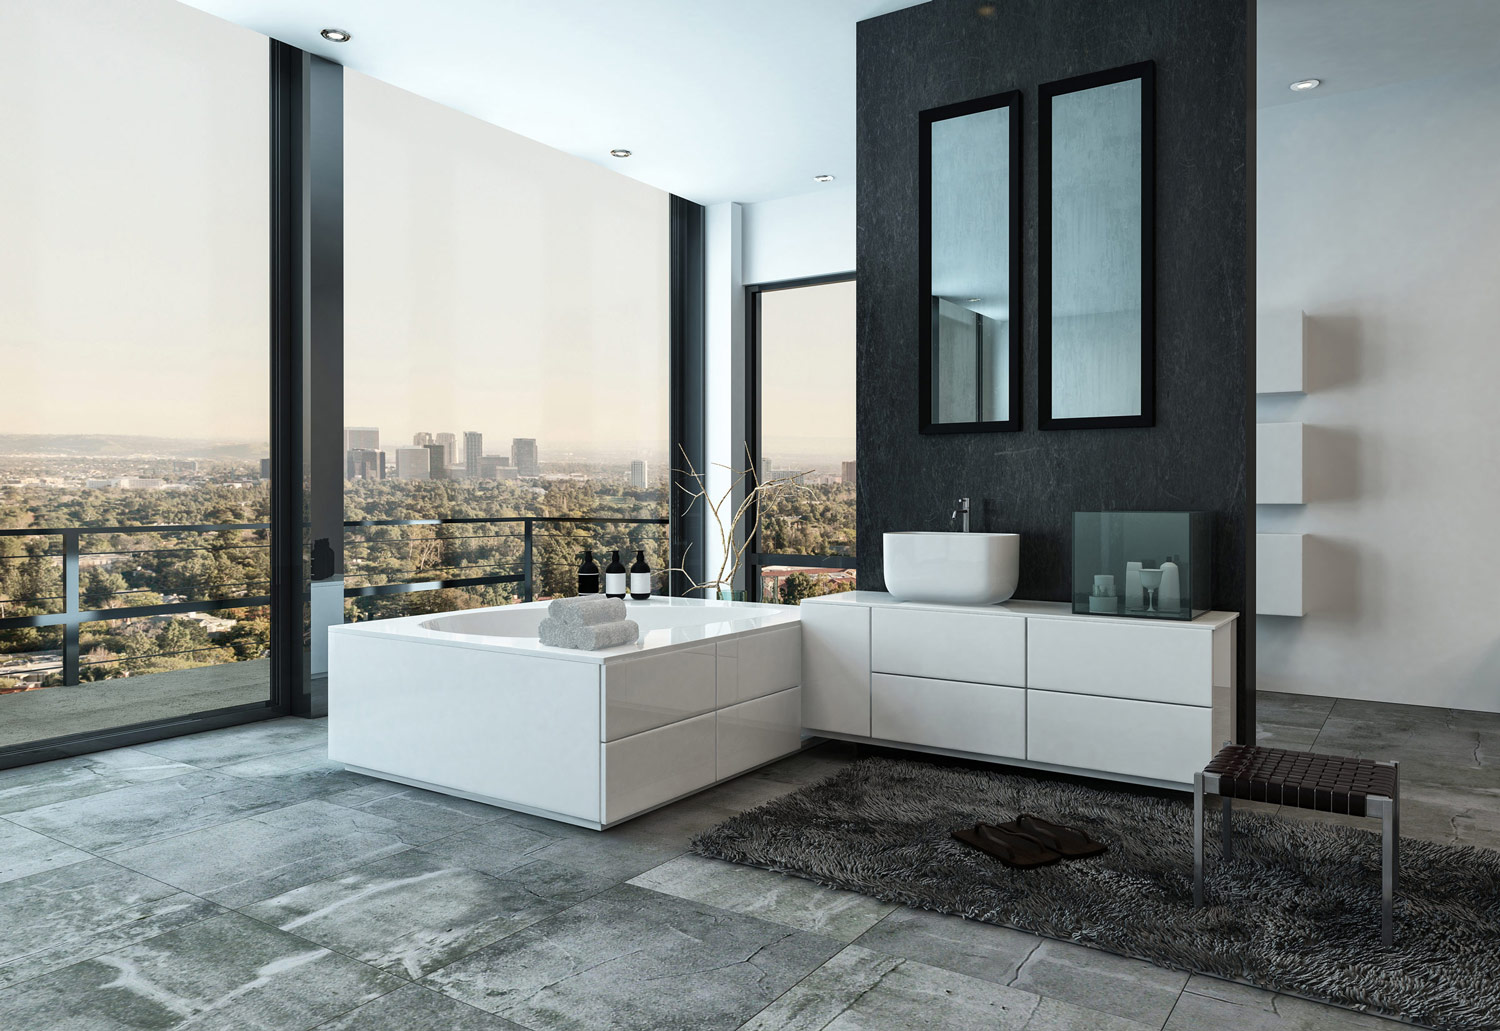 Frisch saniertes, modernes Badezimmer in grau und weiß